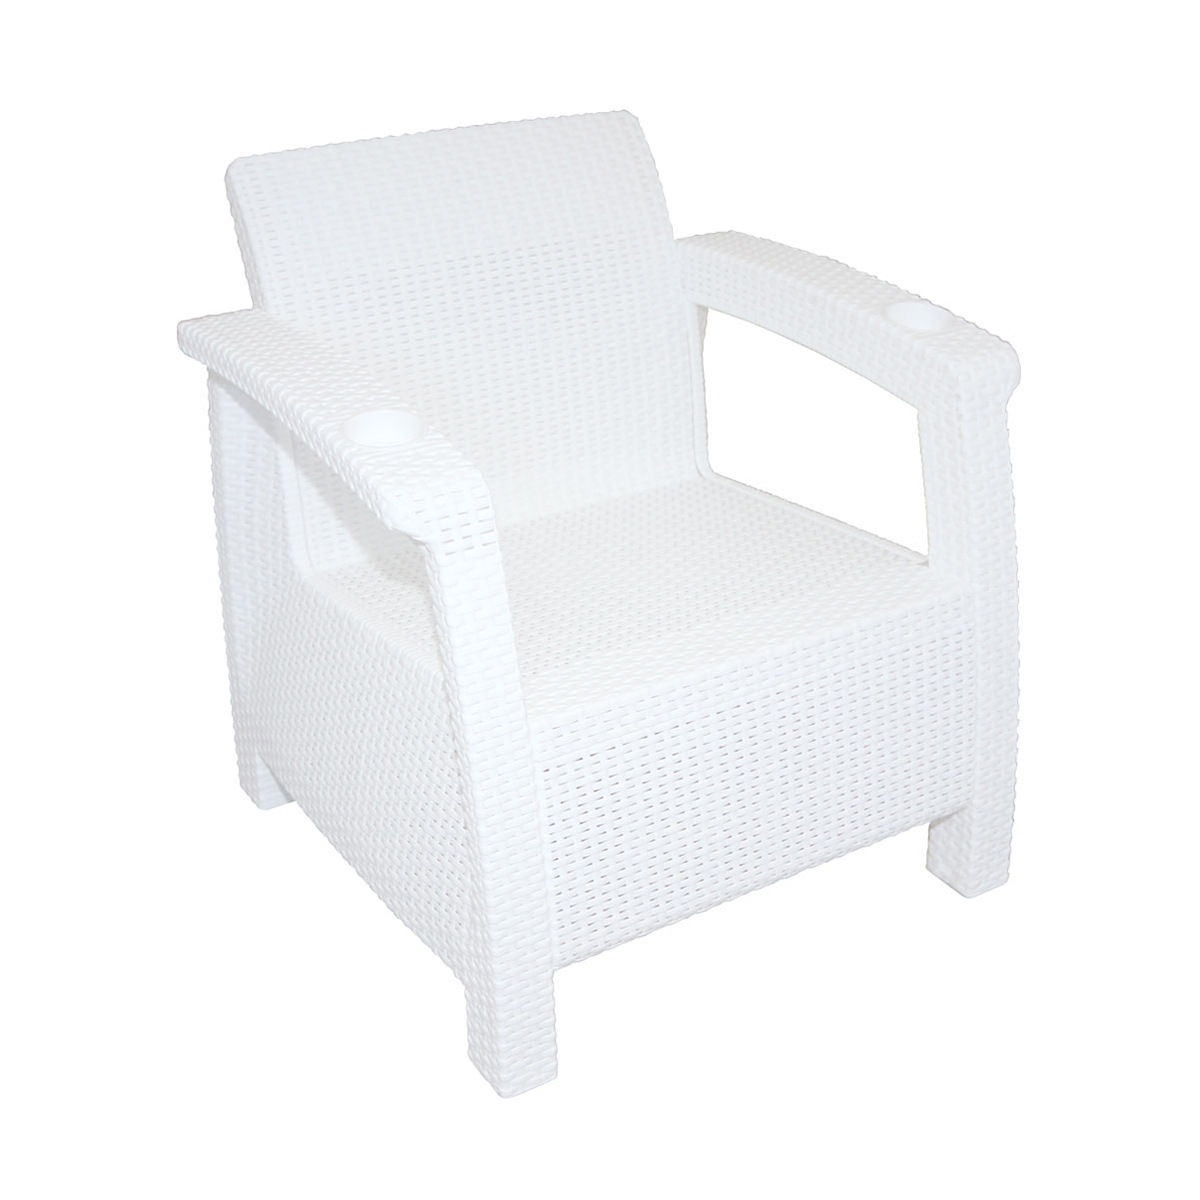 Кресло Альтернатива Ротанг, 73 x 70 x 79 см, белое